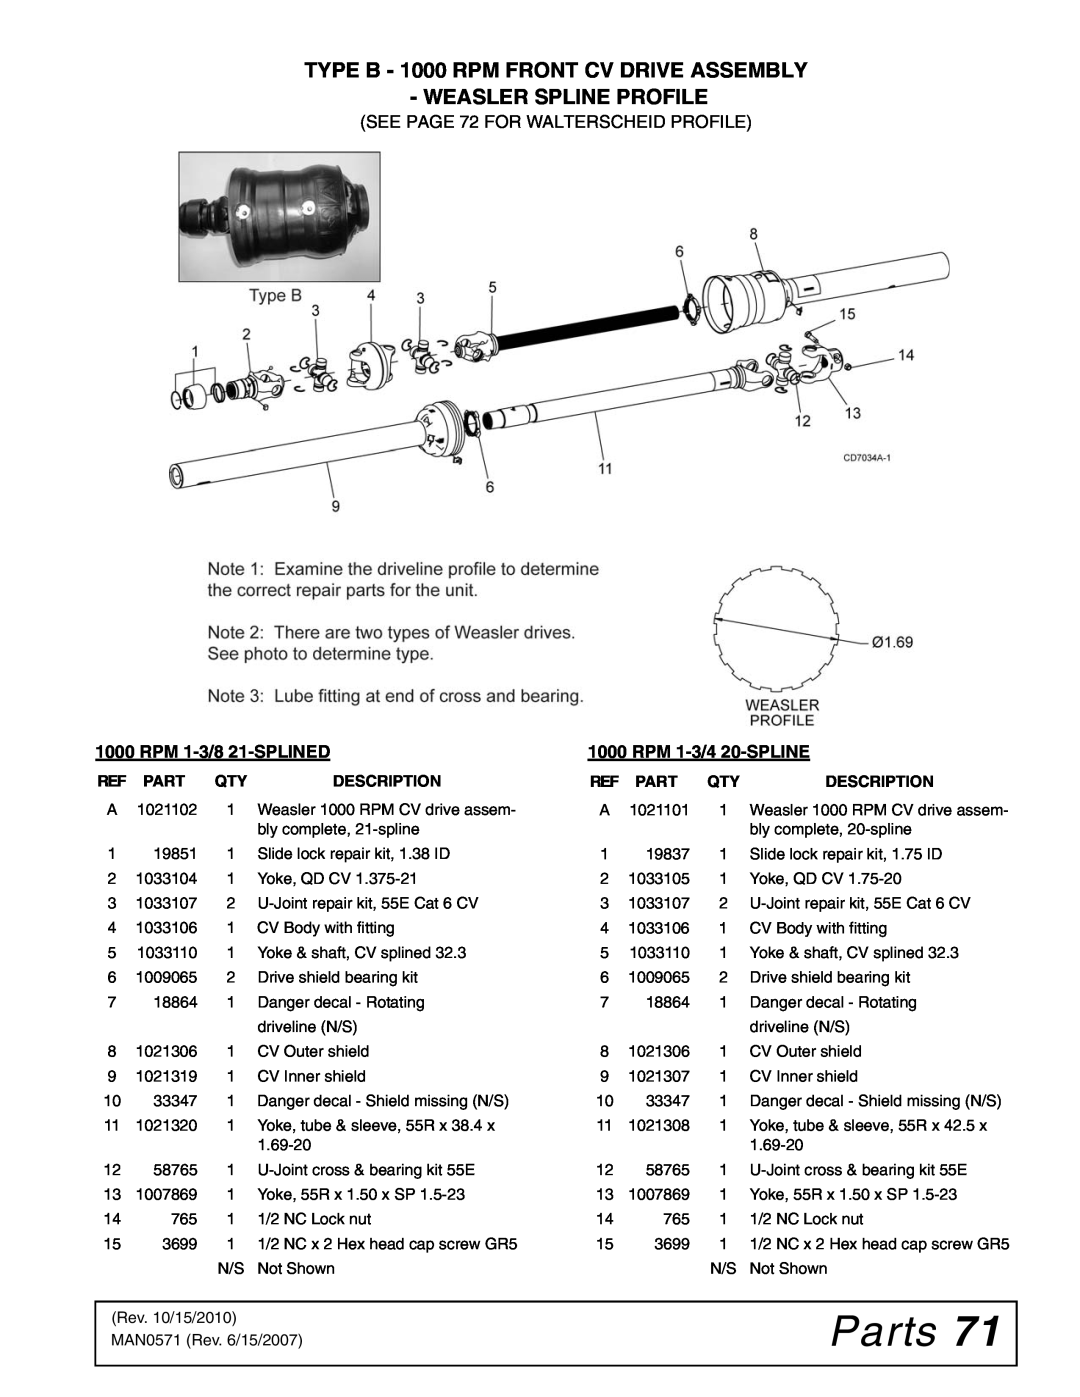 Woods Equipment DS1260Q, DSO1260Q Parts, TYPE B - 1000 RPM FRONT CV DRIVE ASSEMBLY WEASLER SPLINE PROFILE, Description 